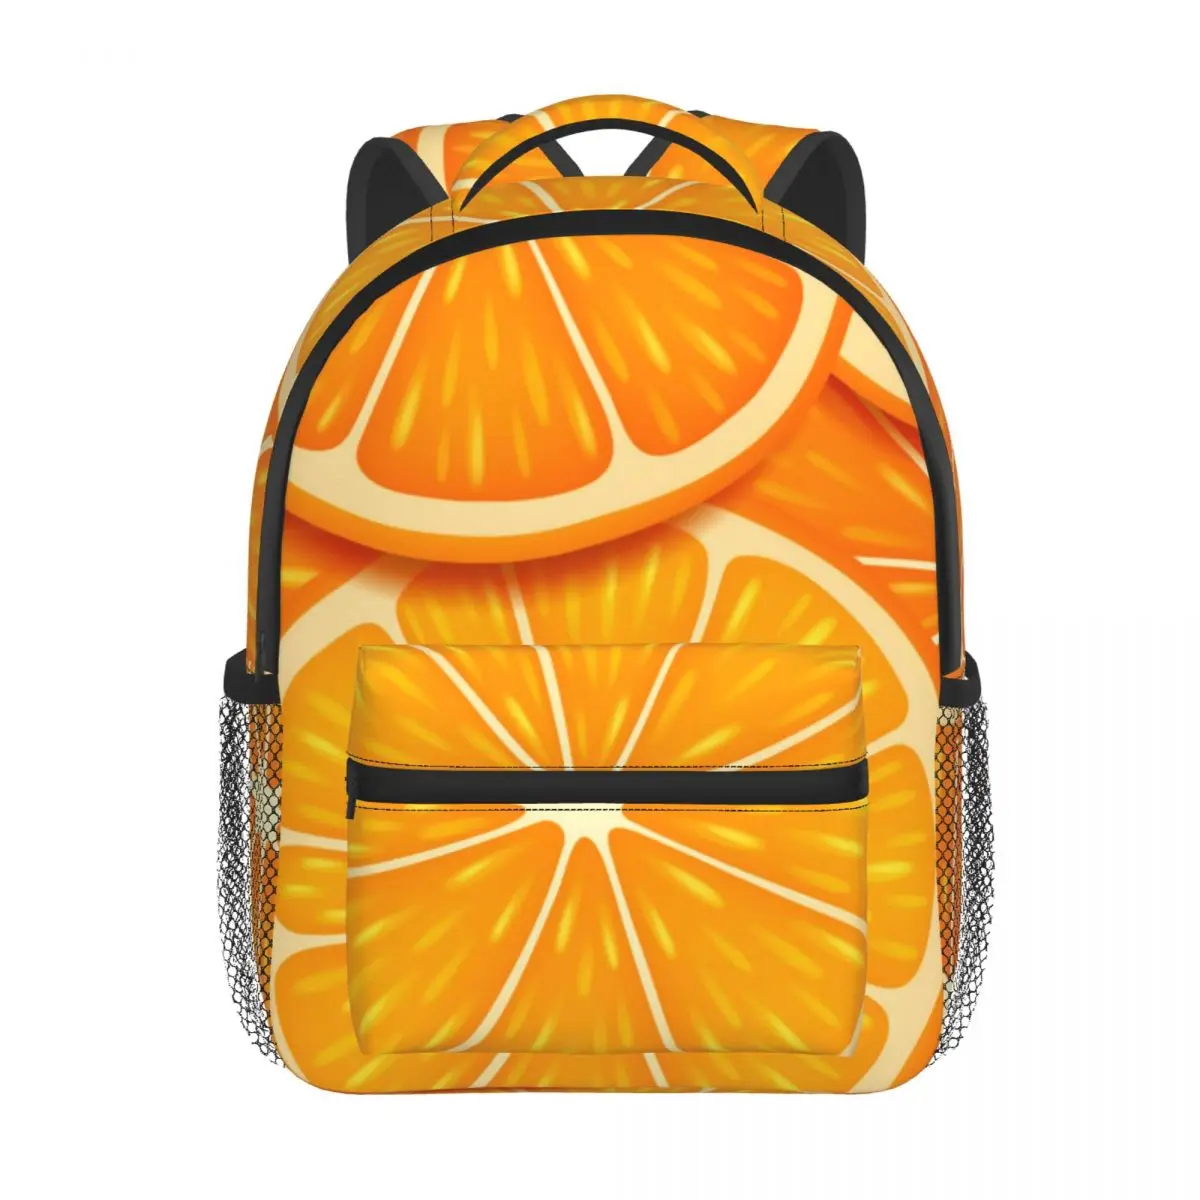 Orange Slices Baby Backpack Kindergarten Schoolbag Kids Children School Bag